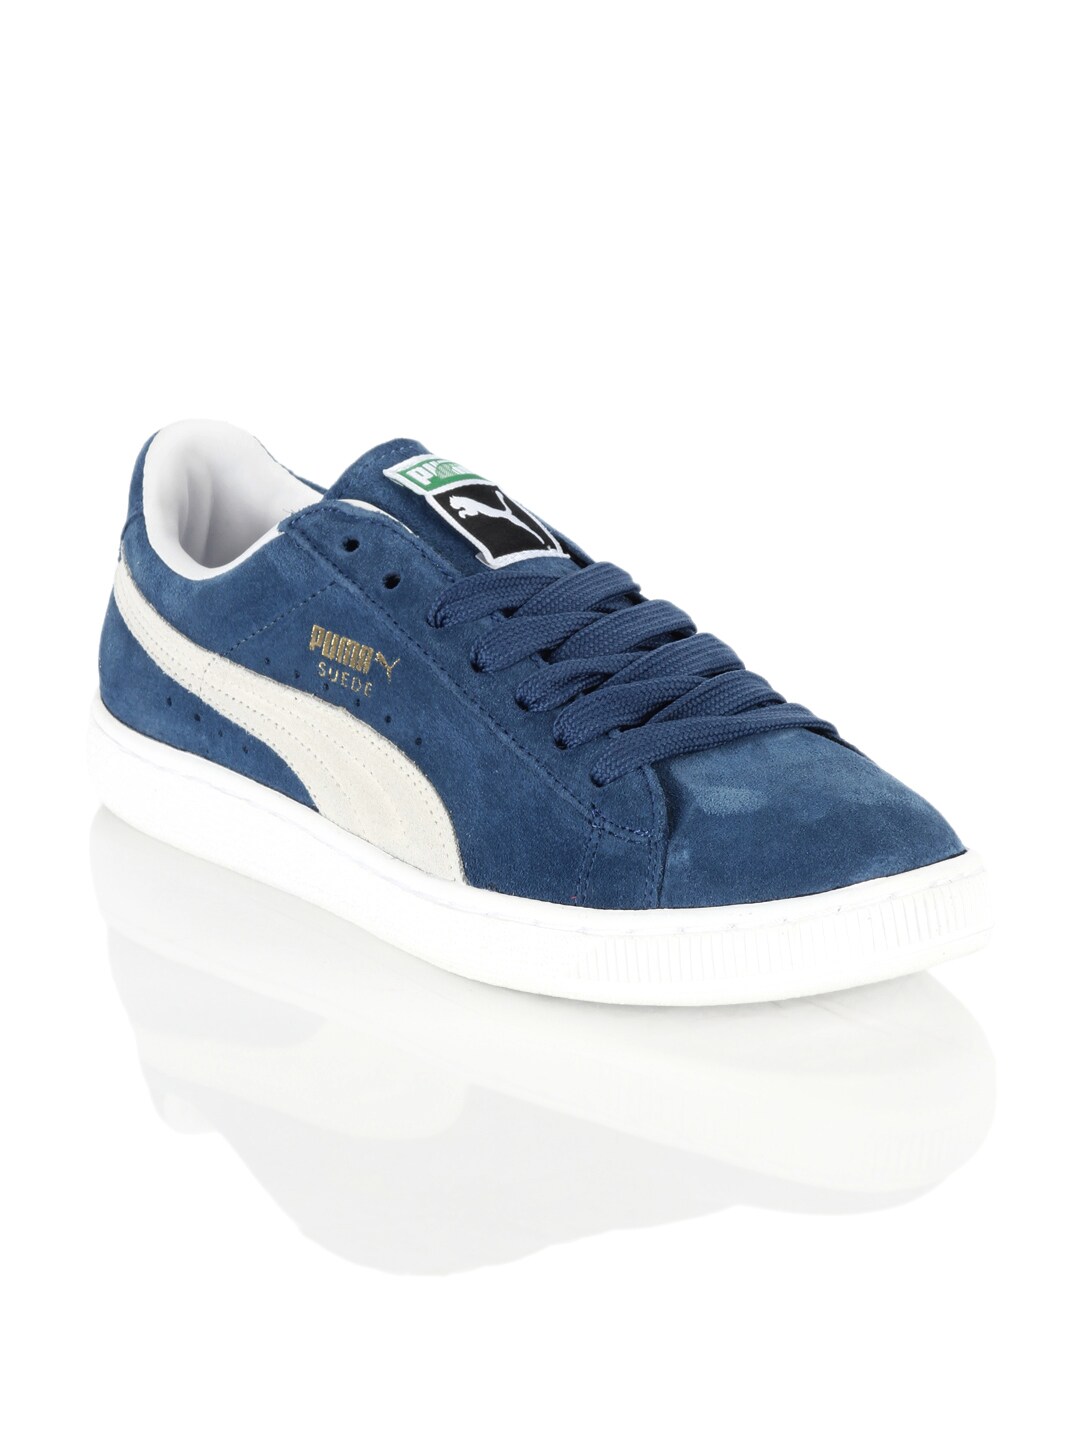 Puma Men Blue Shoes